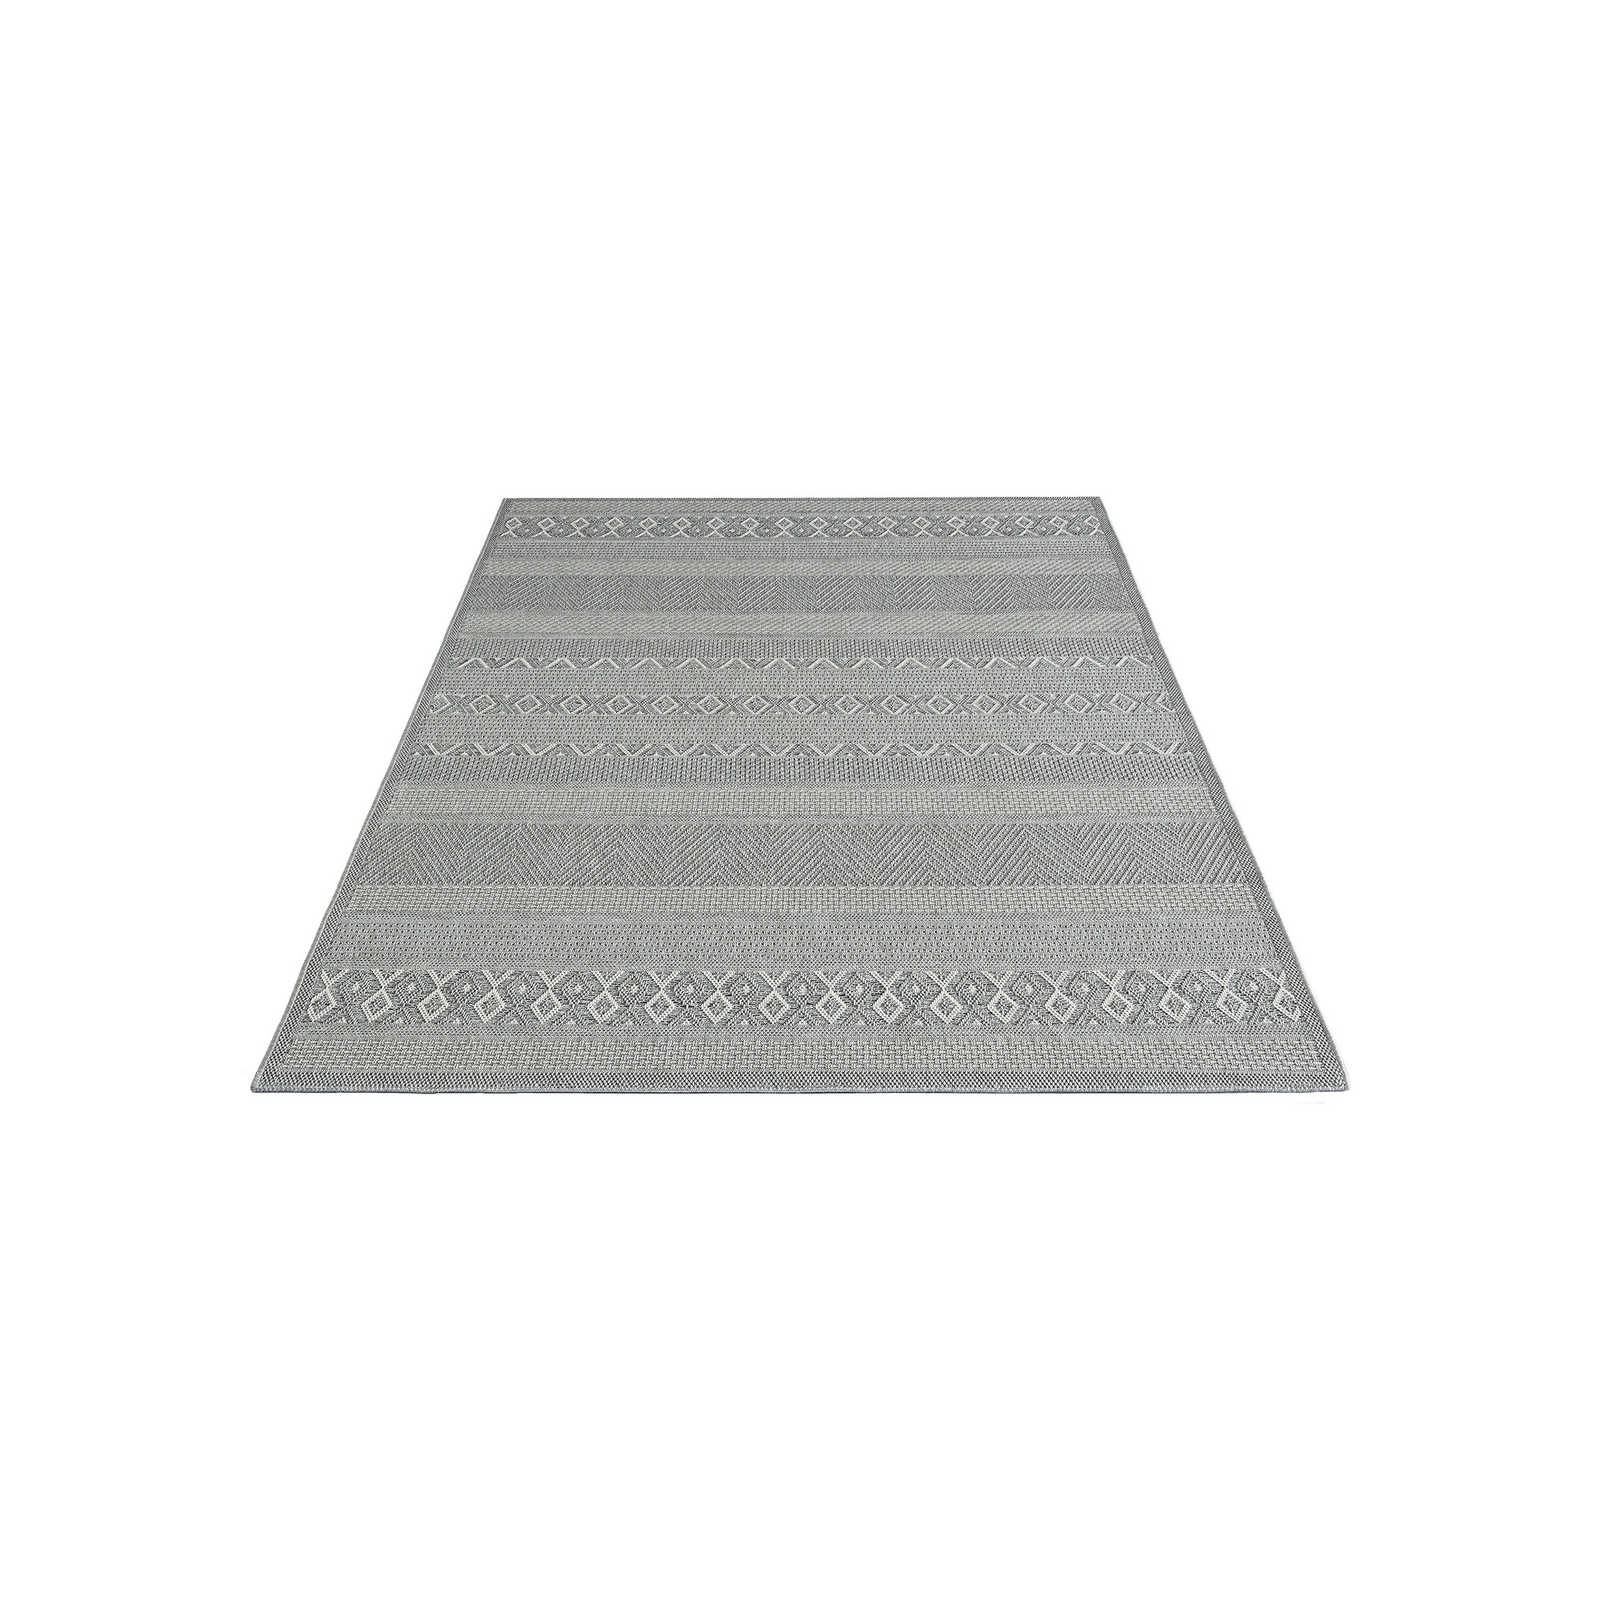 Buitenkleed met eenvoudig patroon in grijs - 200 x 140 cm
